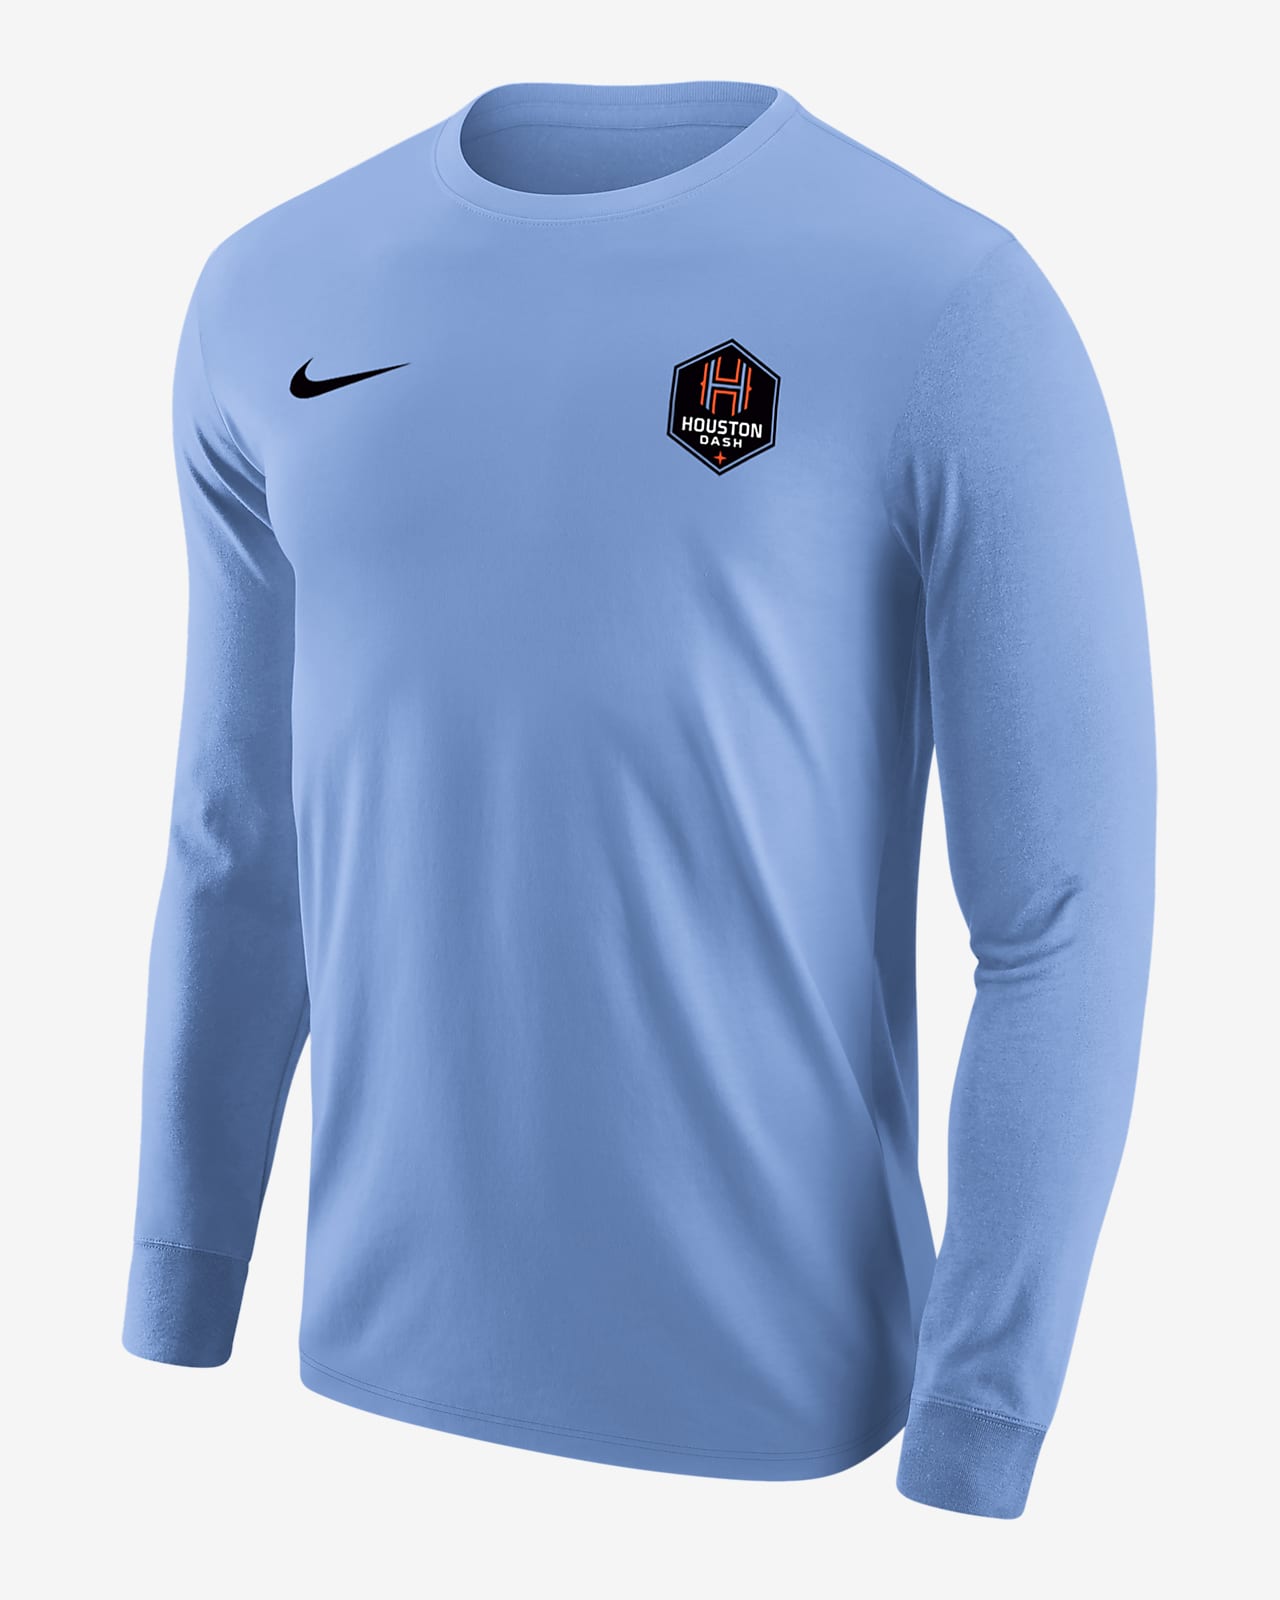 Houston Dash Men's Nike Soccer Long-Sleeve T-Shirt